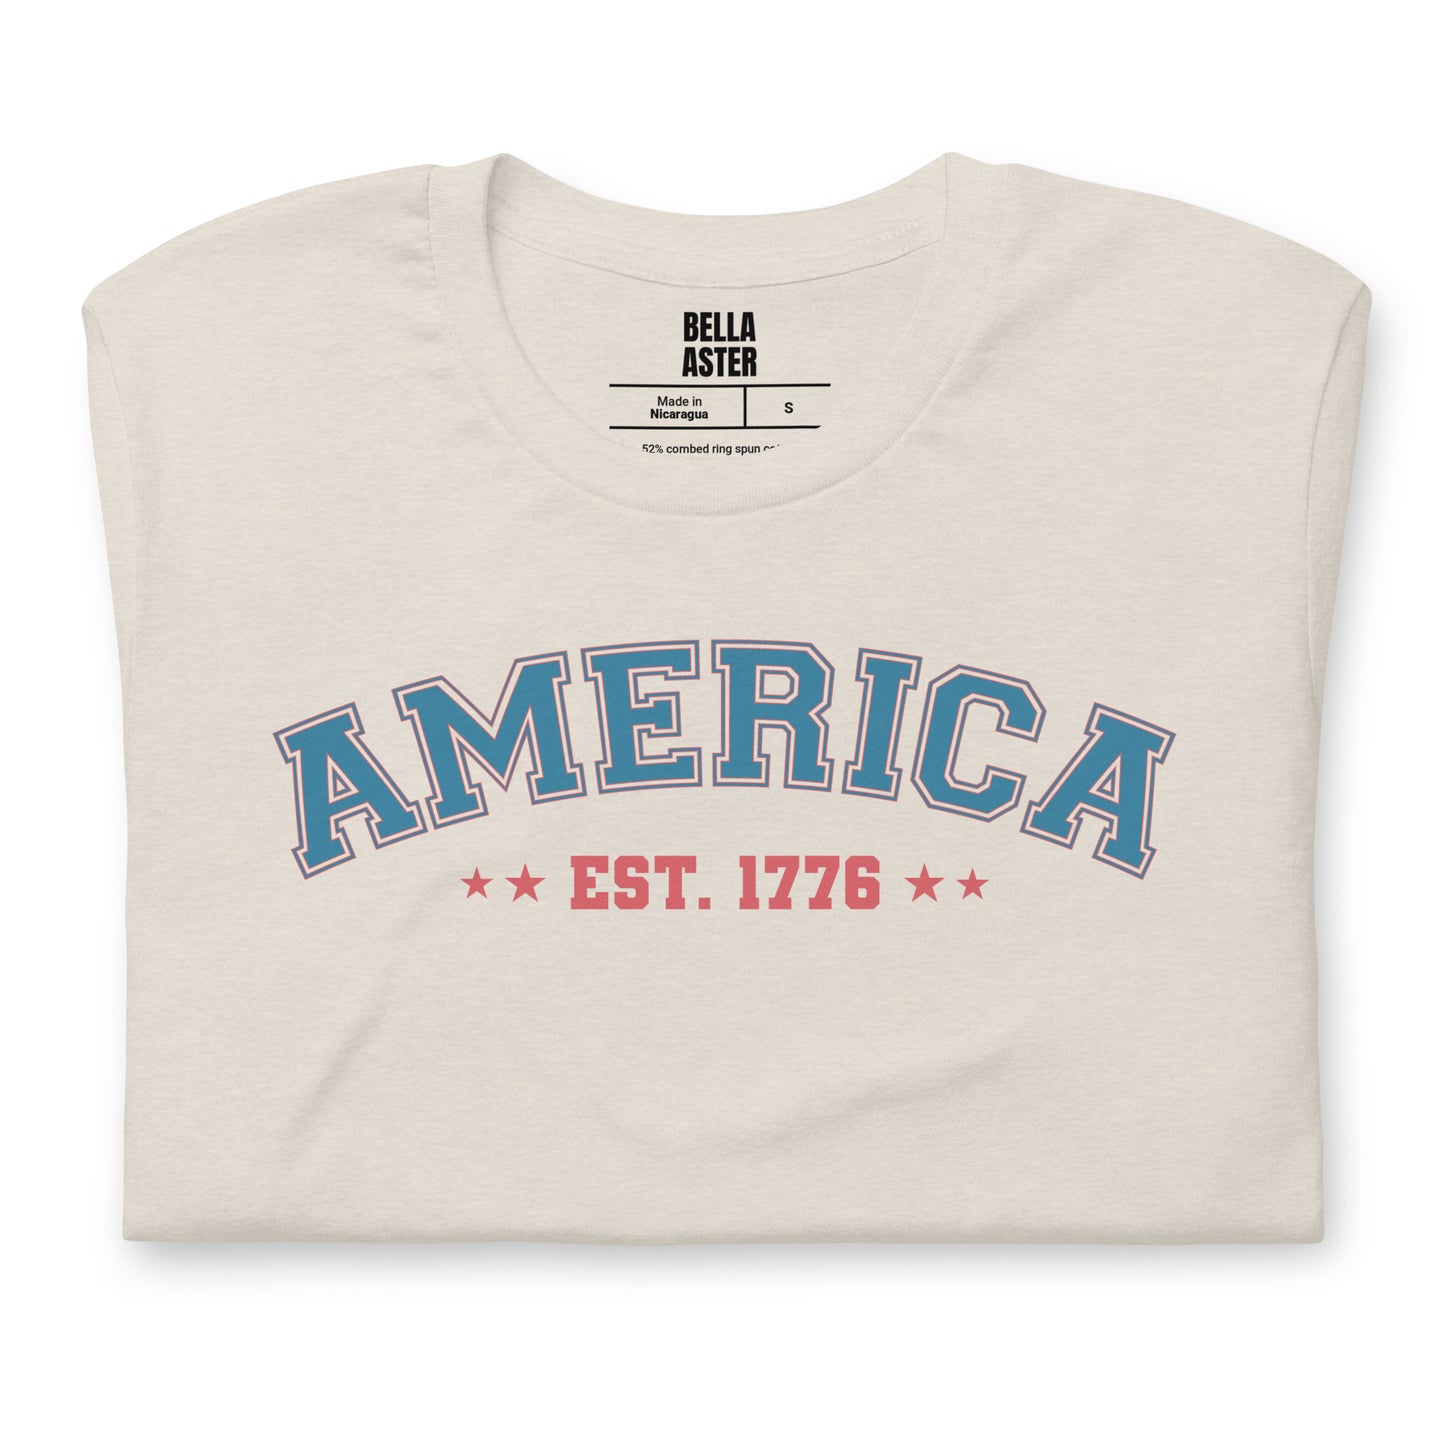 America Est. 1776 Unisex T-Shirt